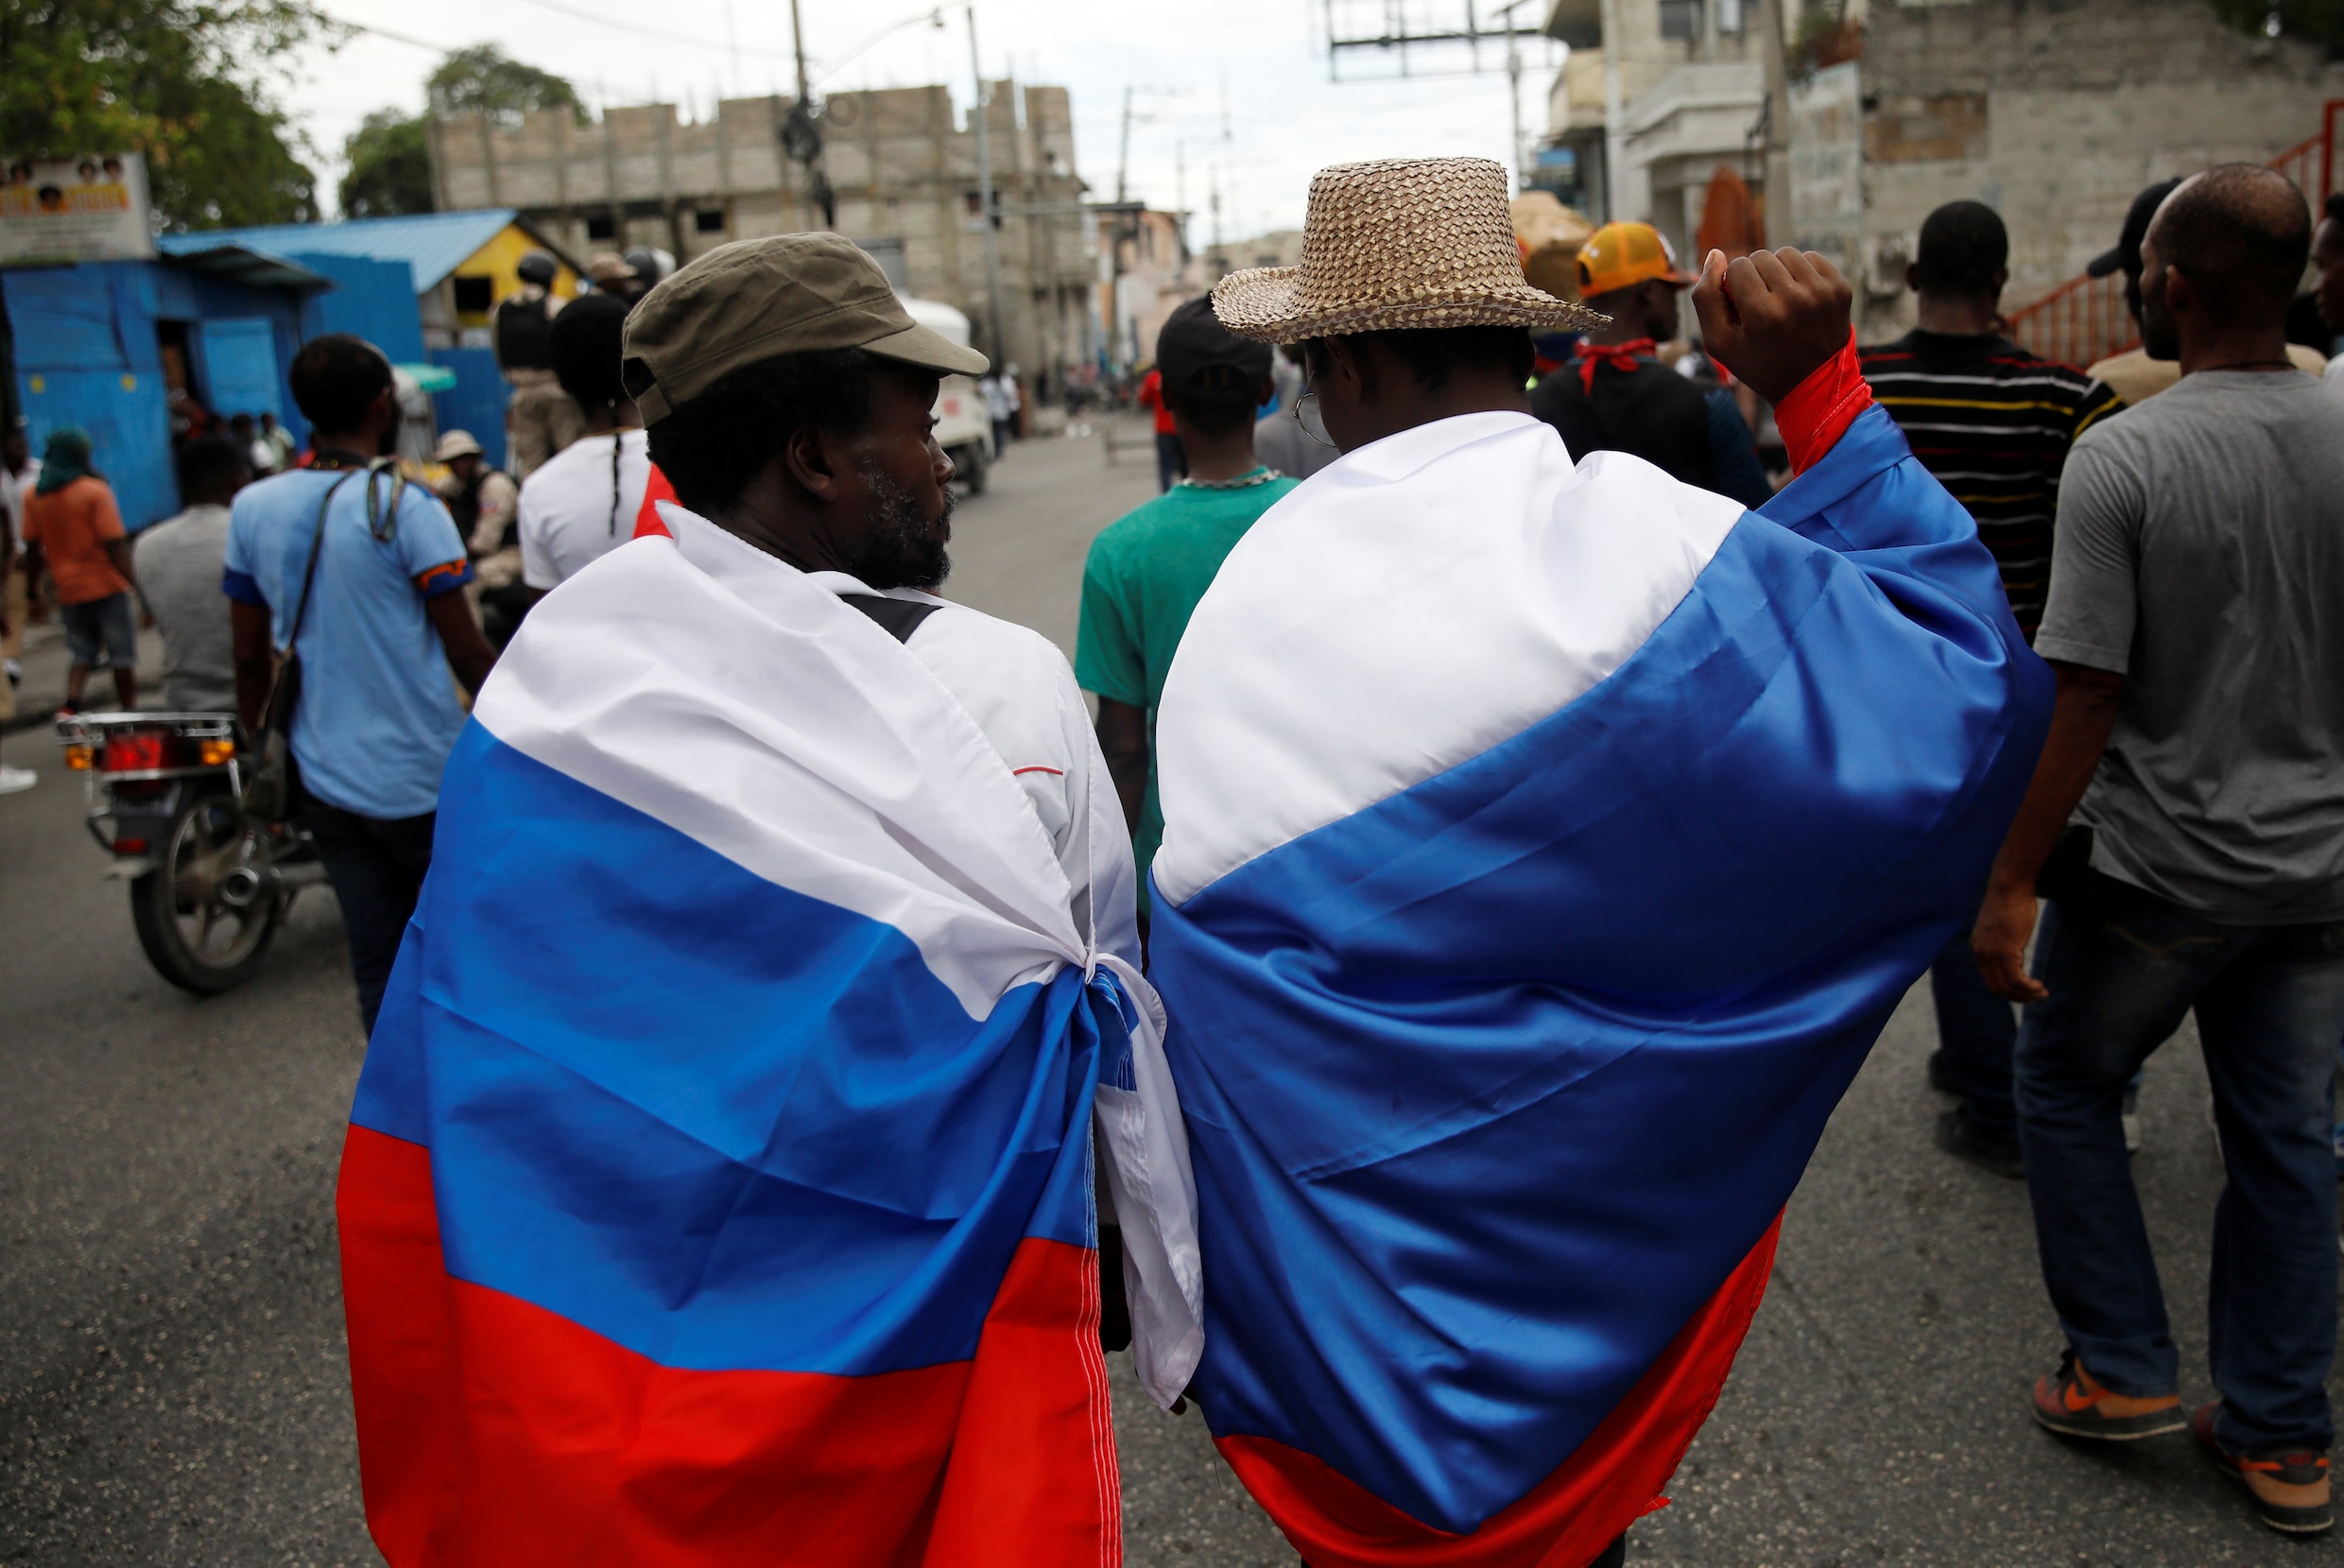 Haïtianen eisen vertrek van president: “We willen dat Poetin ons van dictatuur VS afhelpt”